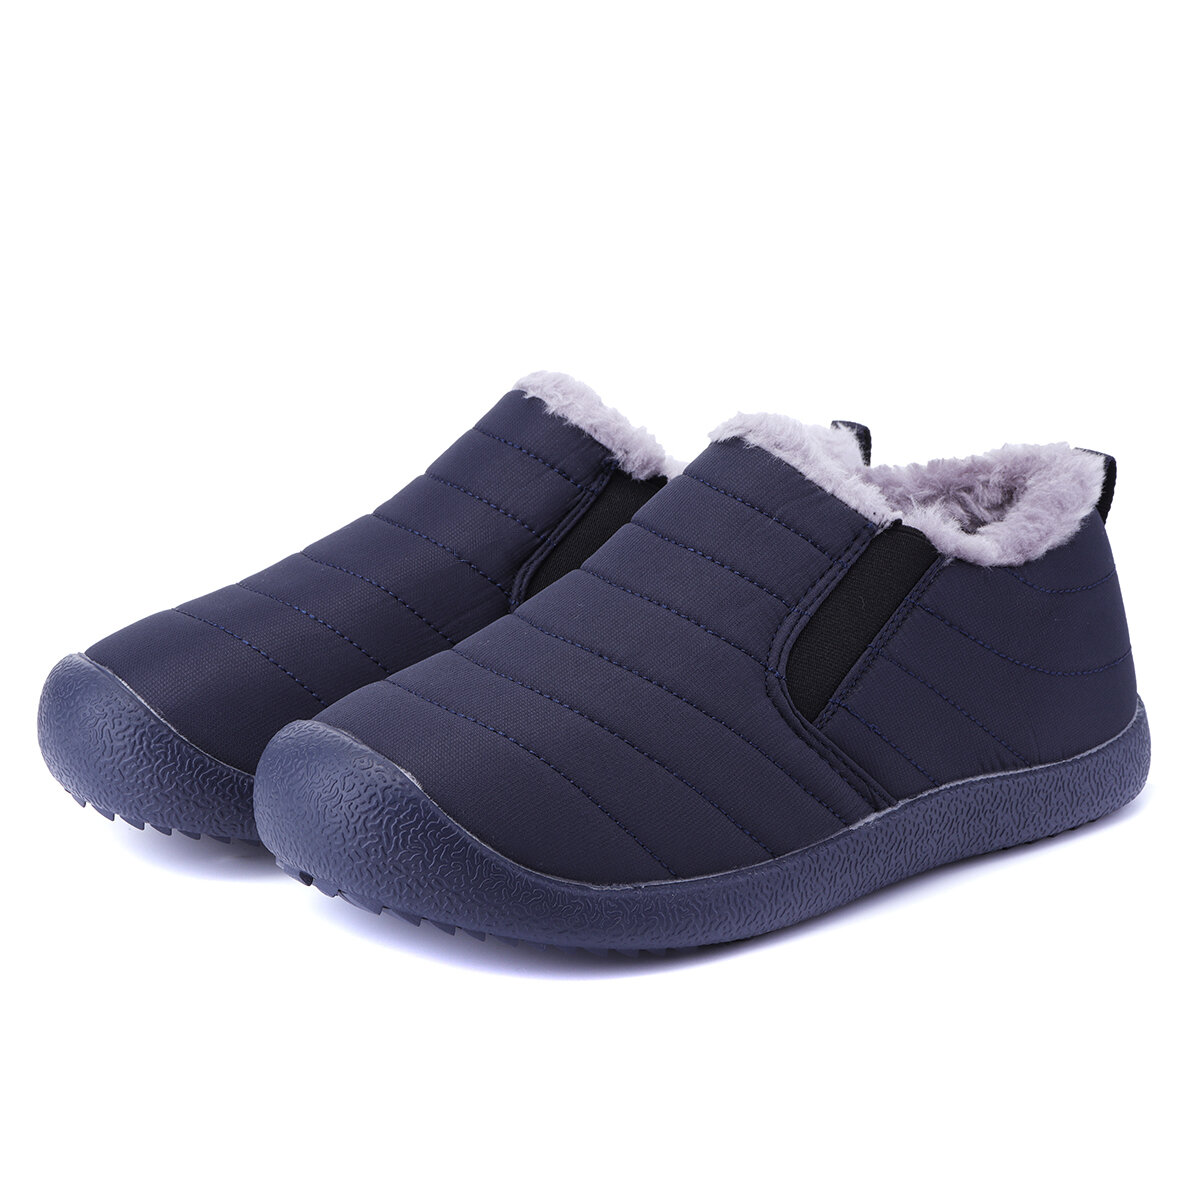 Erkekler Kış Sıcak Ayak Bileği Botlar Kürk Astar Su Geçirmez Yürüyüş Ayakkabıları Rahat Nefes Martin Ayakkabı